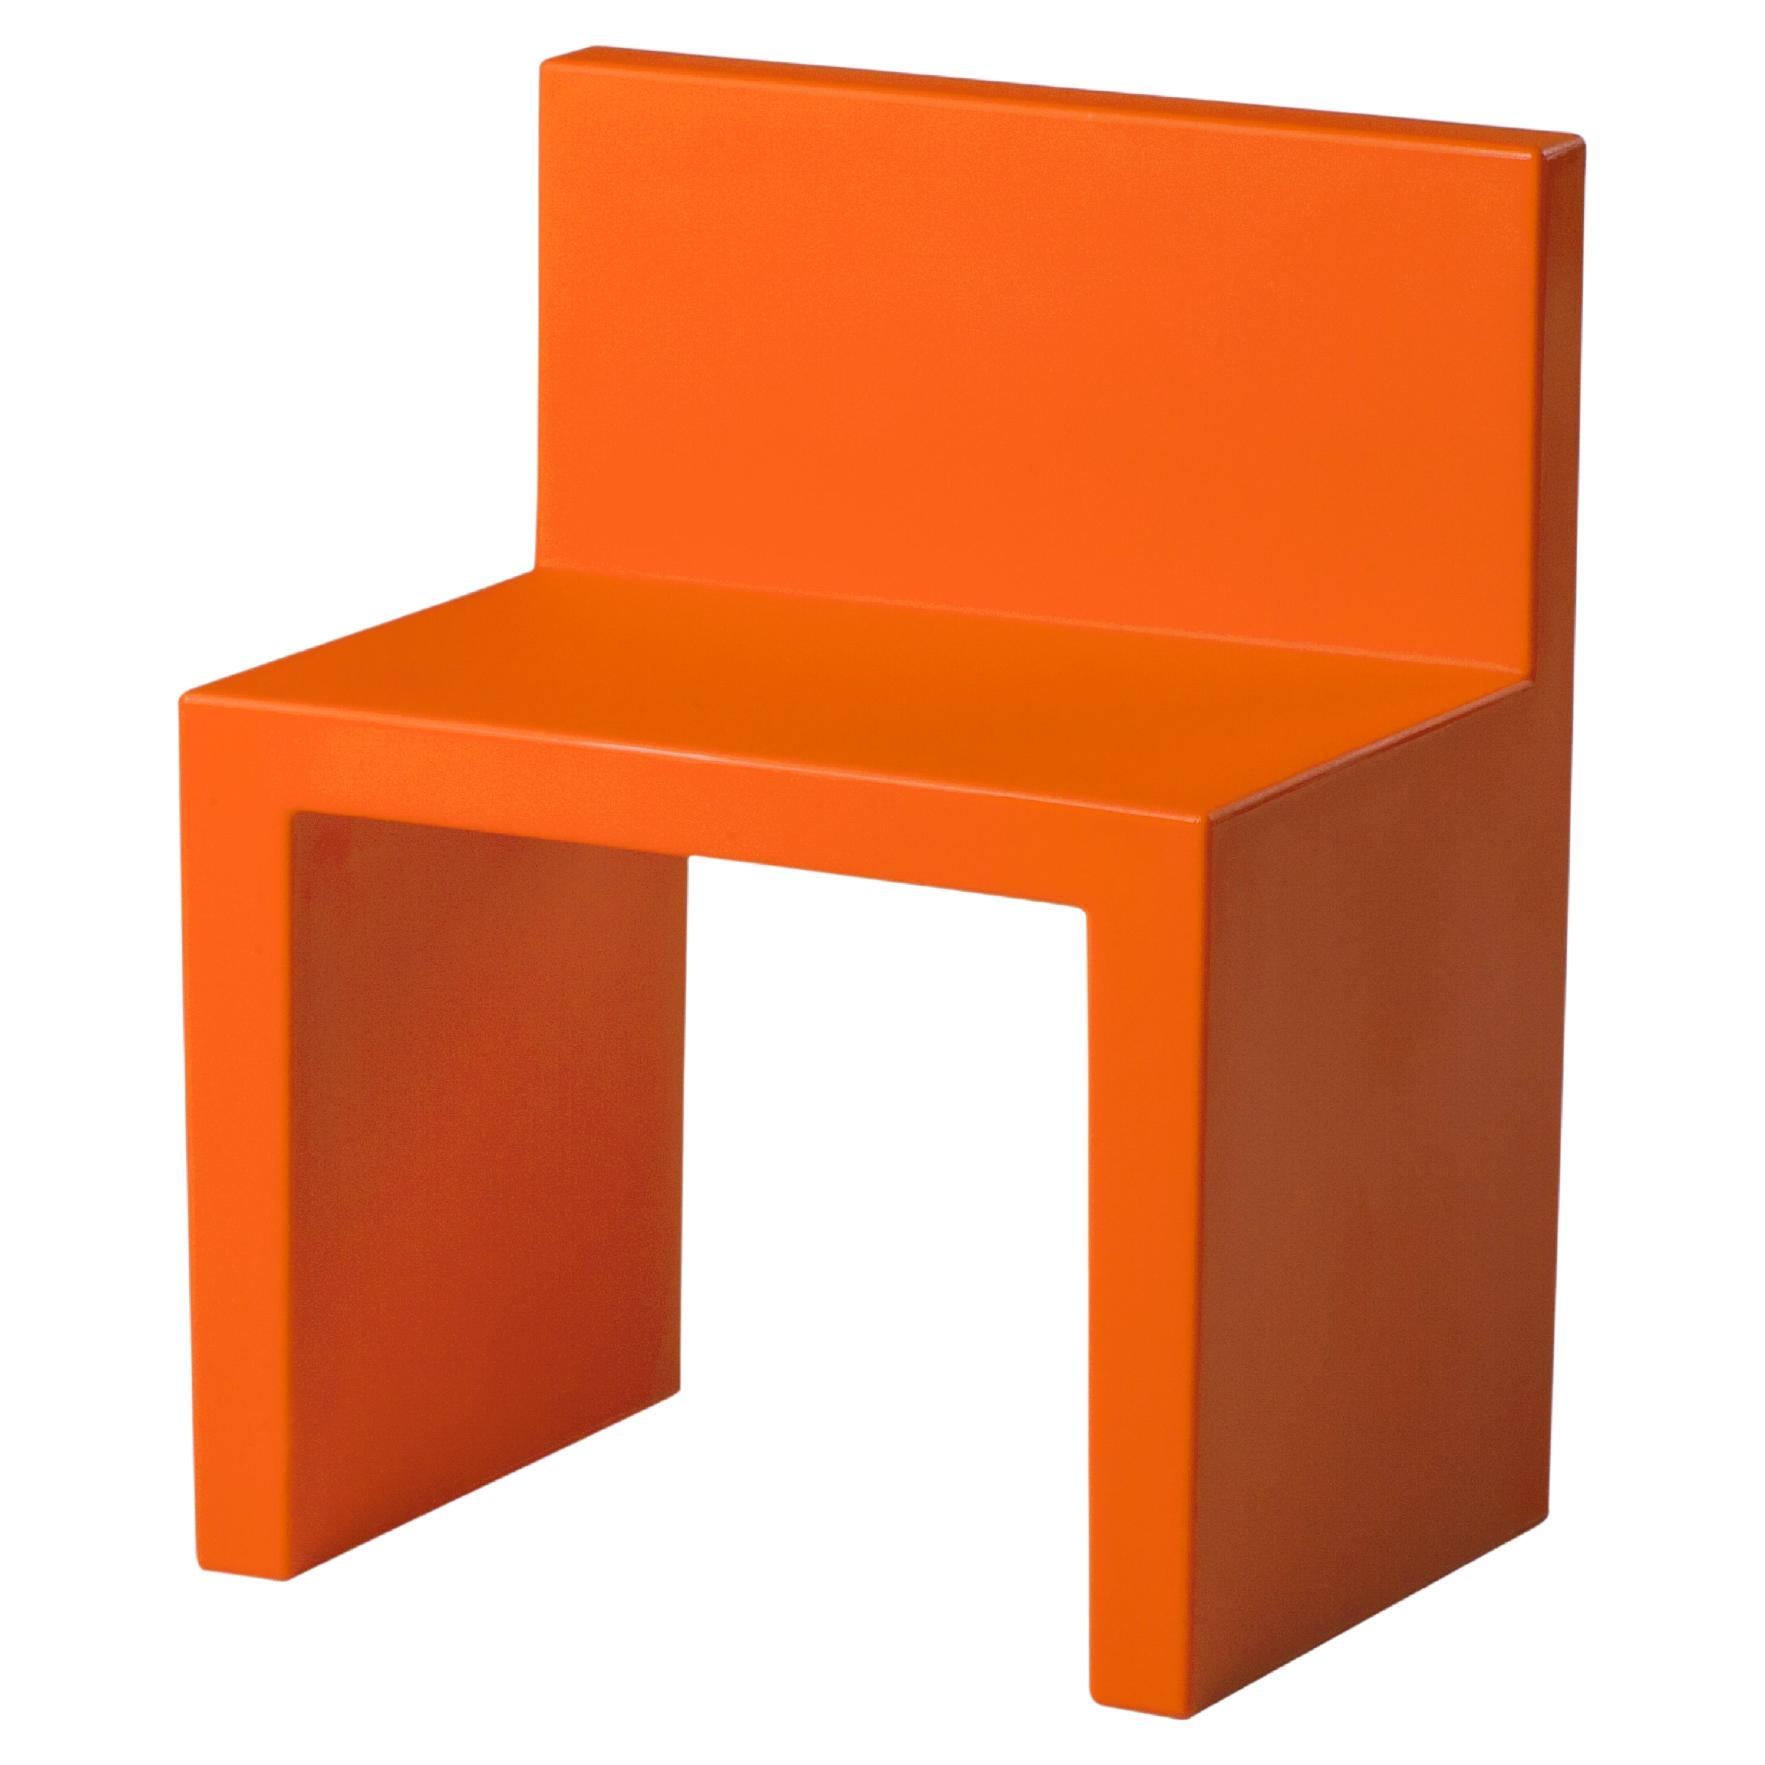 Slide Design Angolo Retto Kids Chair in Pumpkin Orange by Slide Studio For Sale